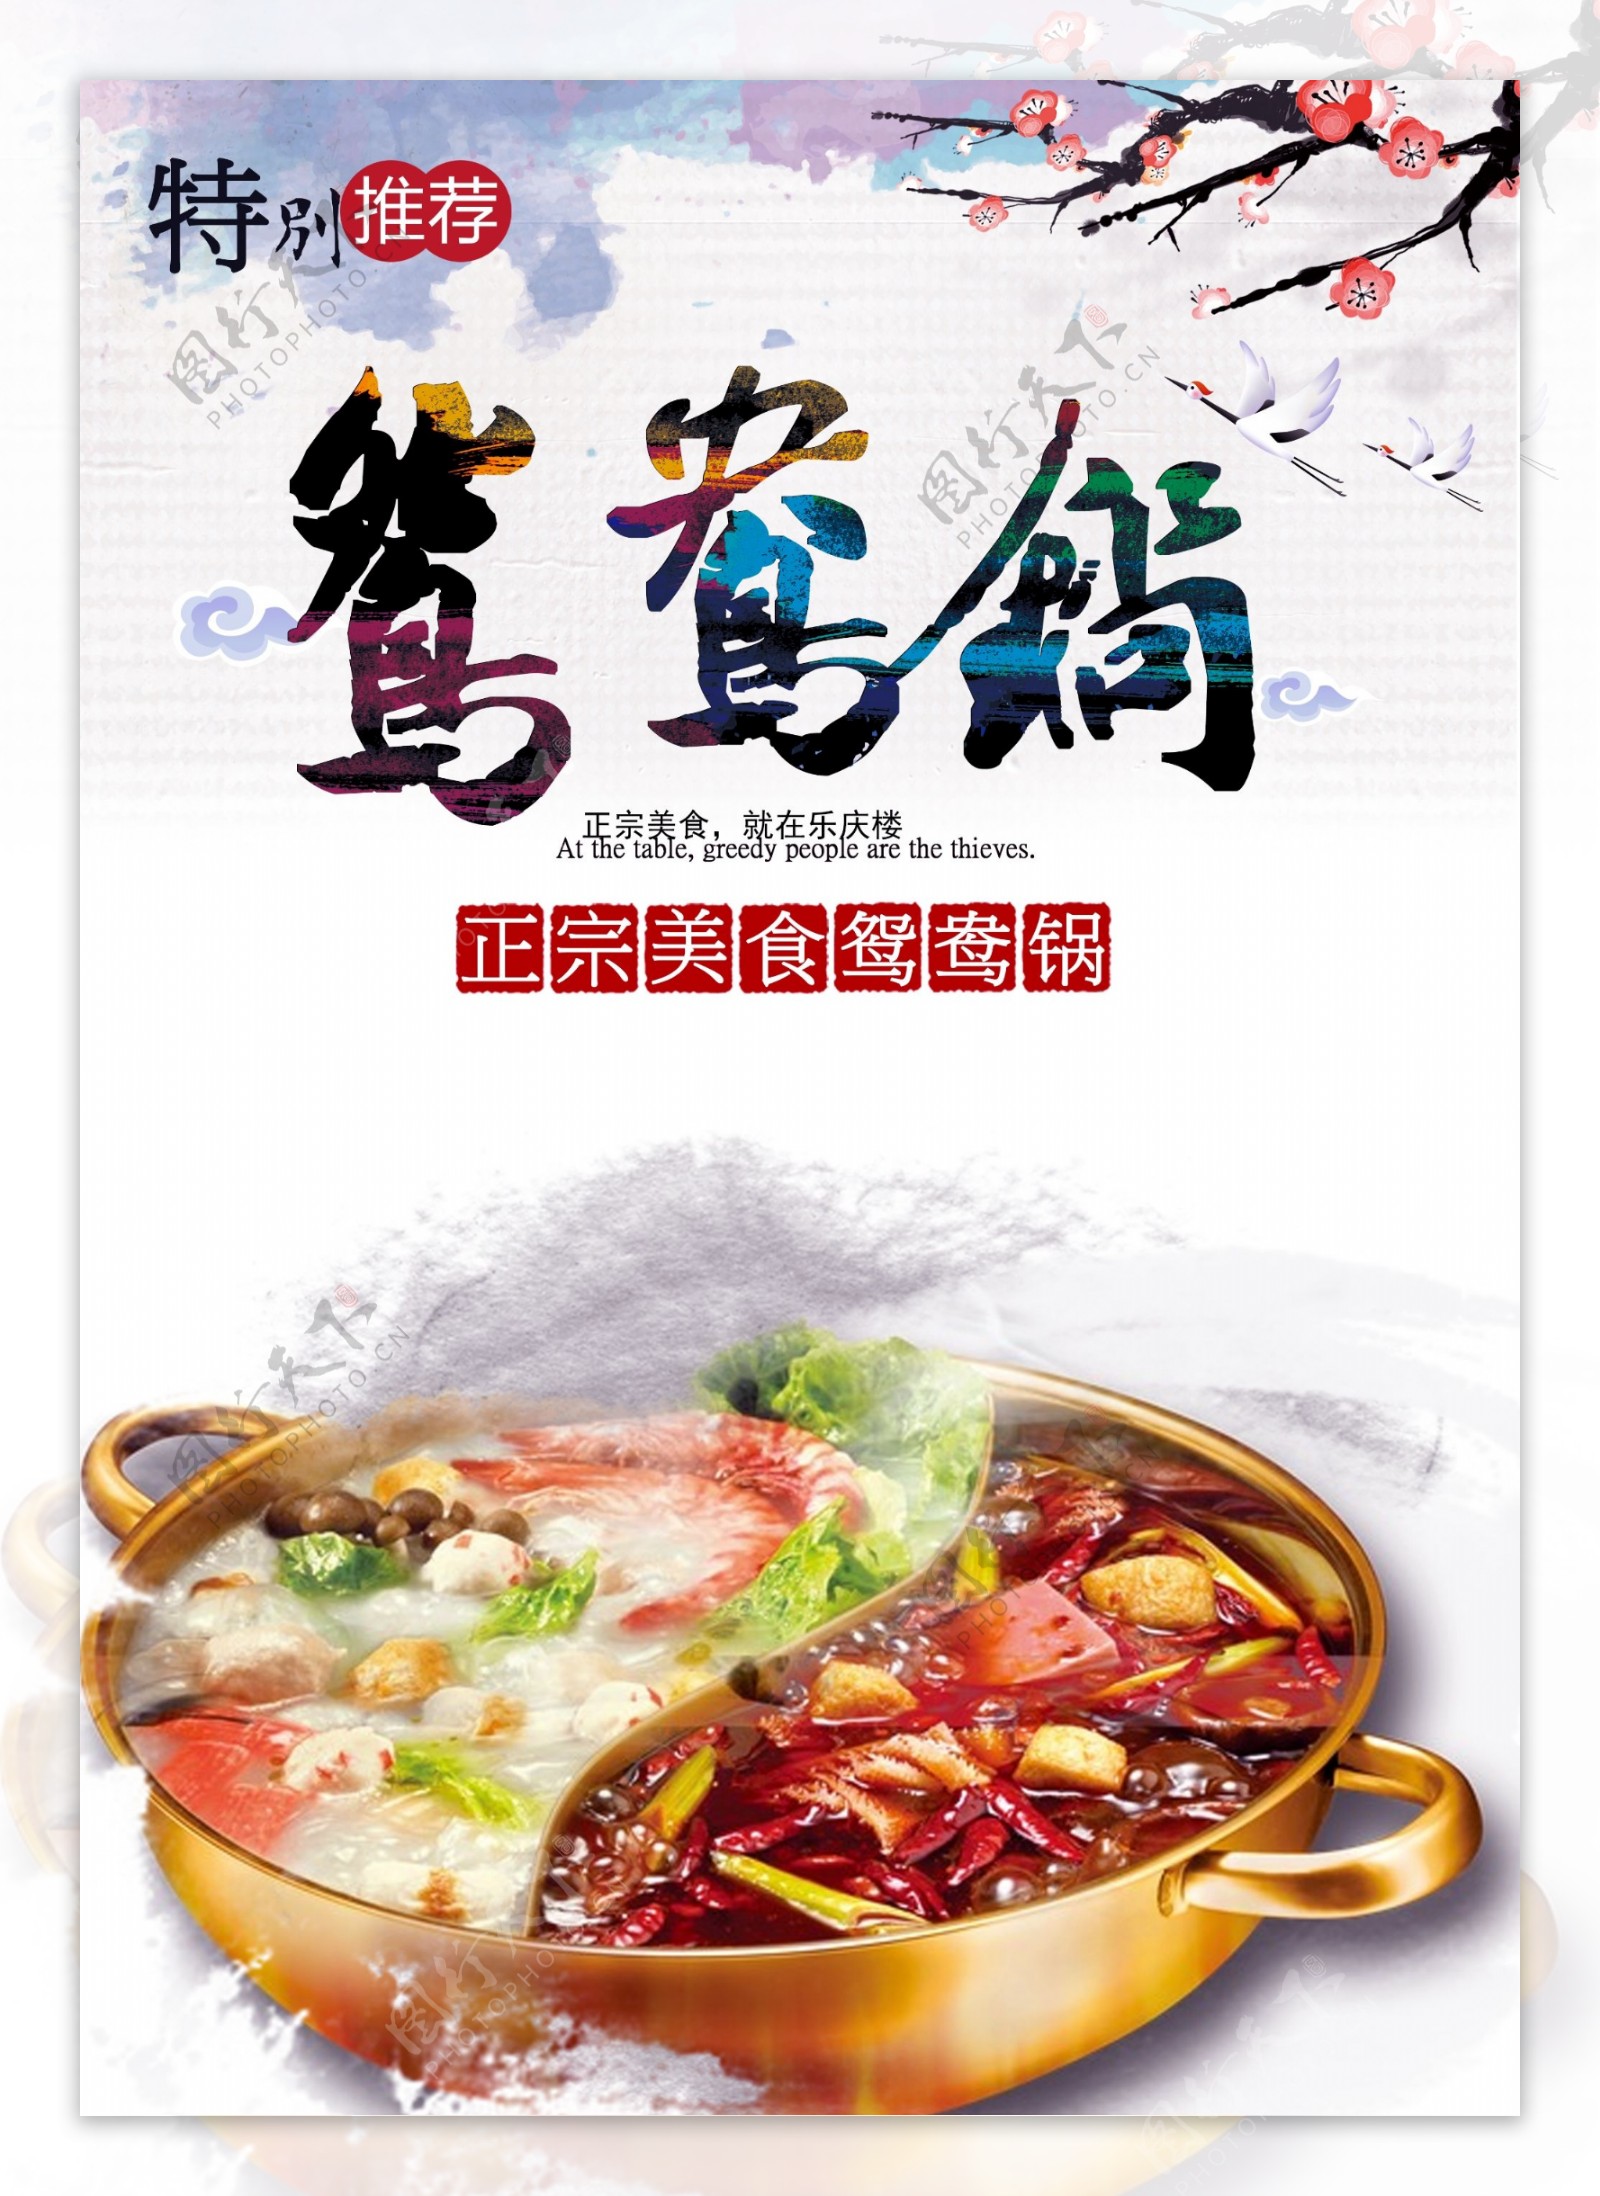 鸳鸯火锅店铺宣传海报设计